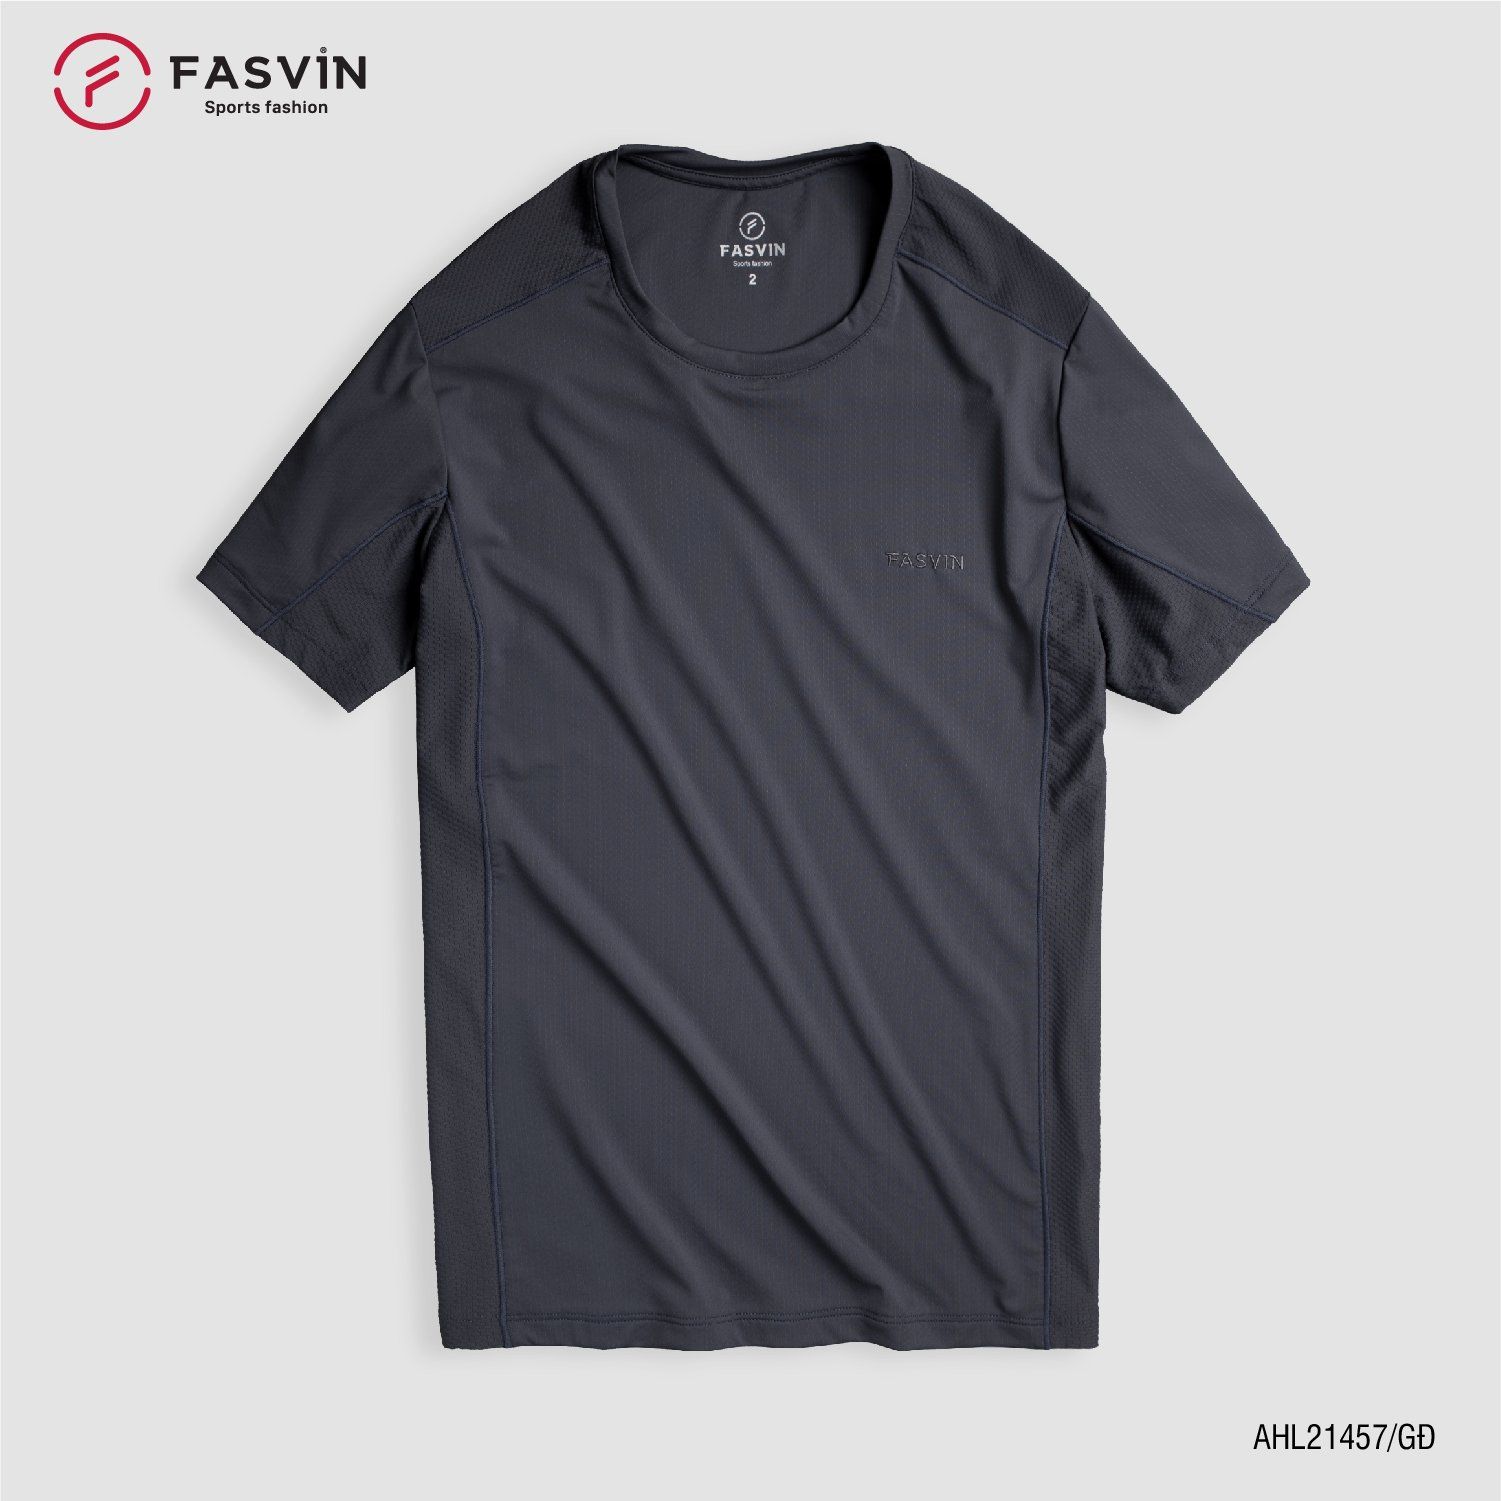  Áo thun thể thao nam Fasvin AHL21457 chất Nylon cao cấp vải mềm mịn thoáng mát thoải mái 